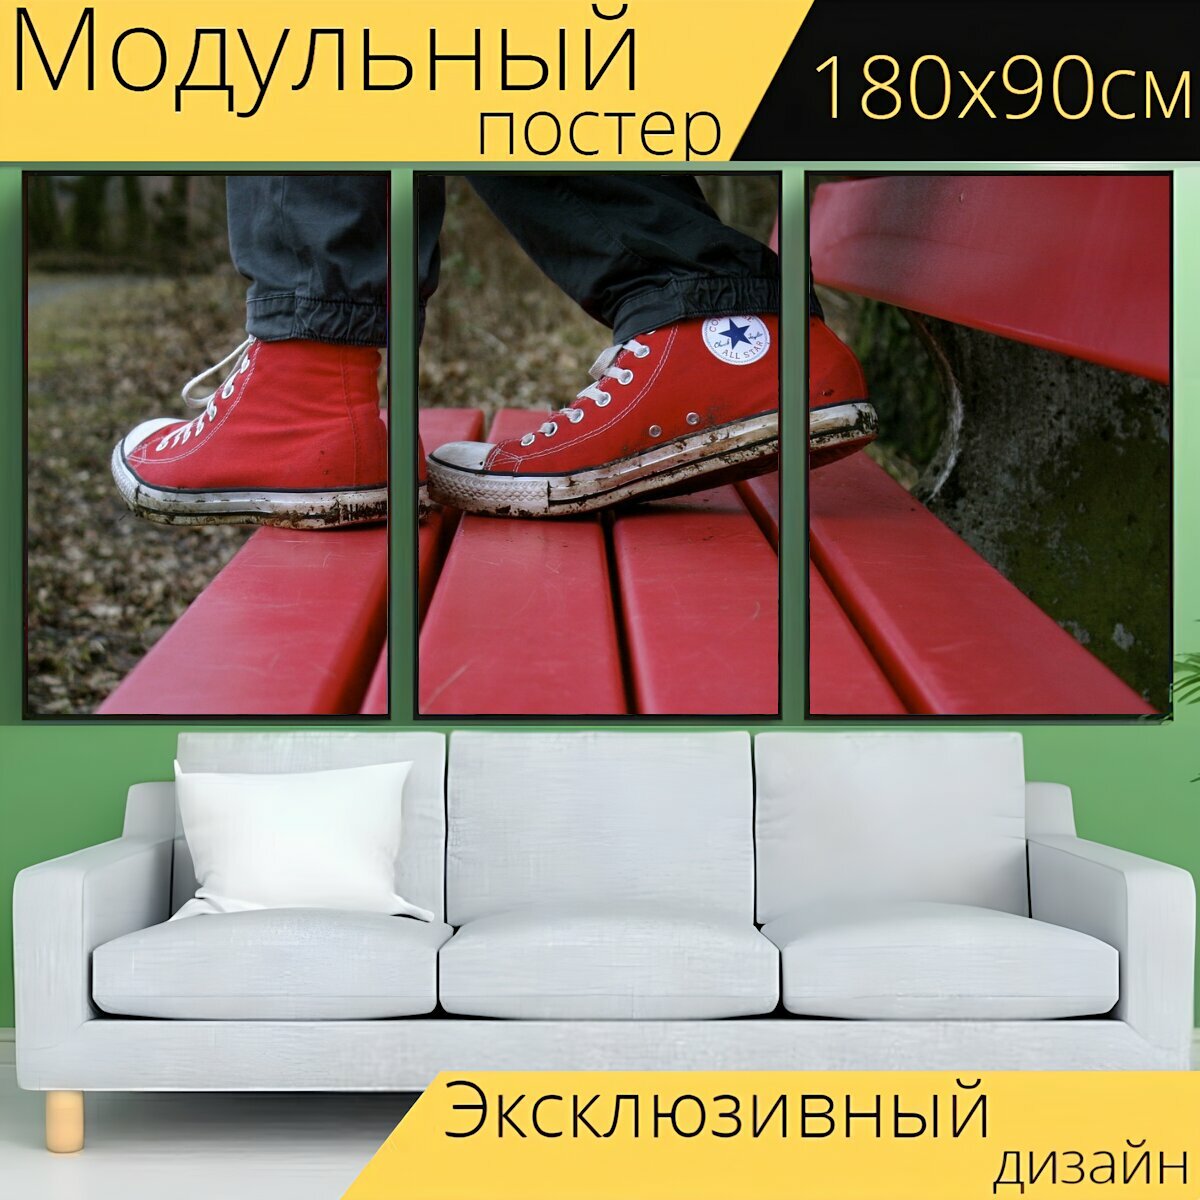 Модульный постер "Обувь, разговаривать, красный" 180 x 90 см. для интерьера